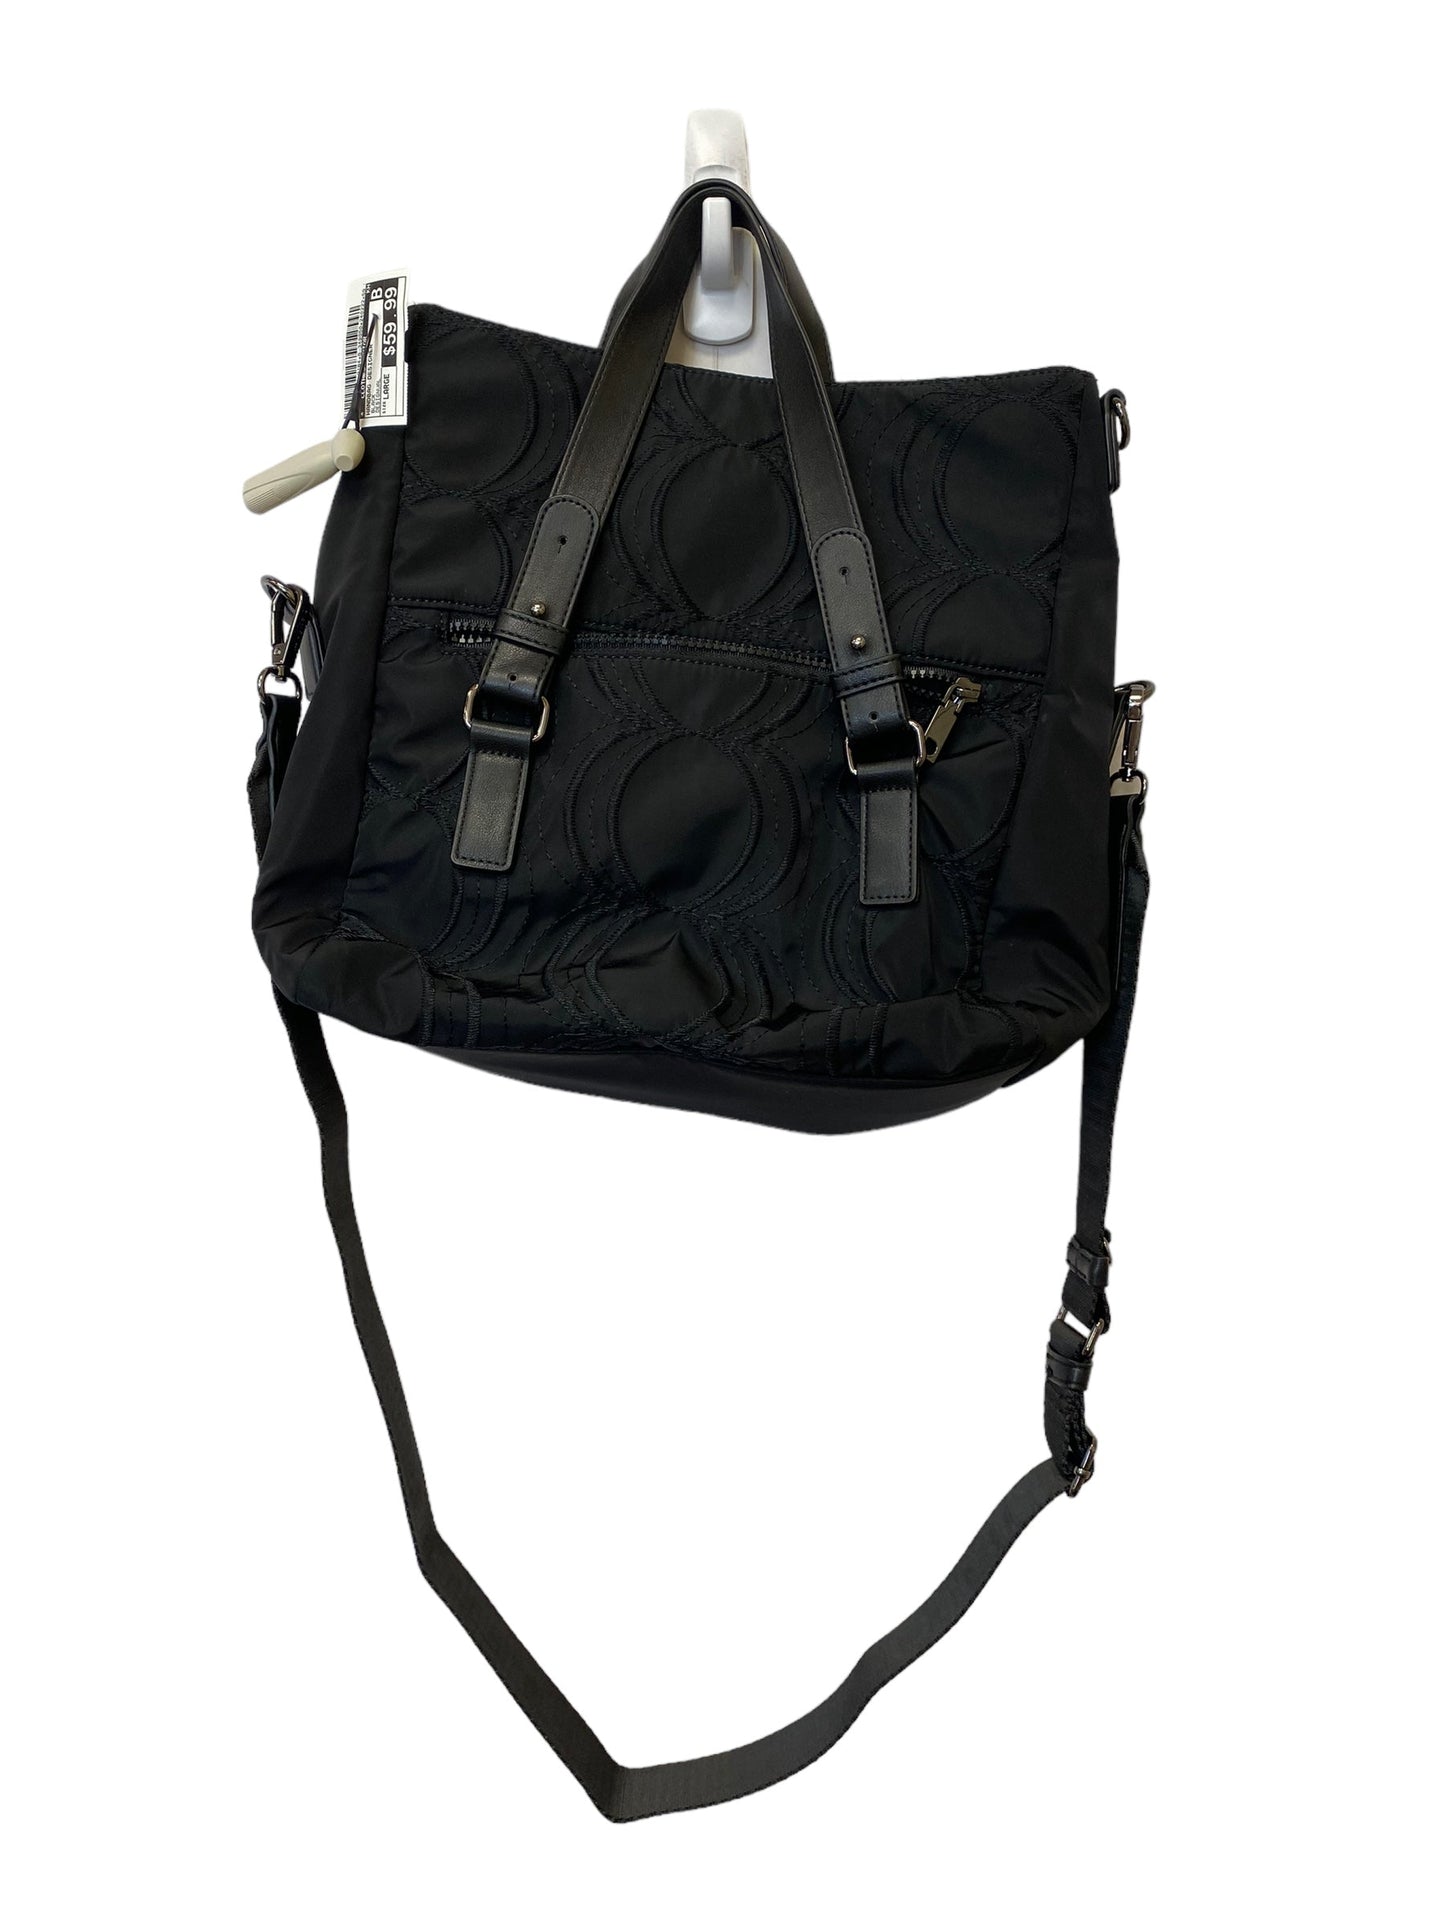 Handbag Designer By Clothes Mentor  Size: Large